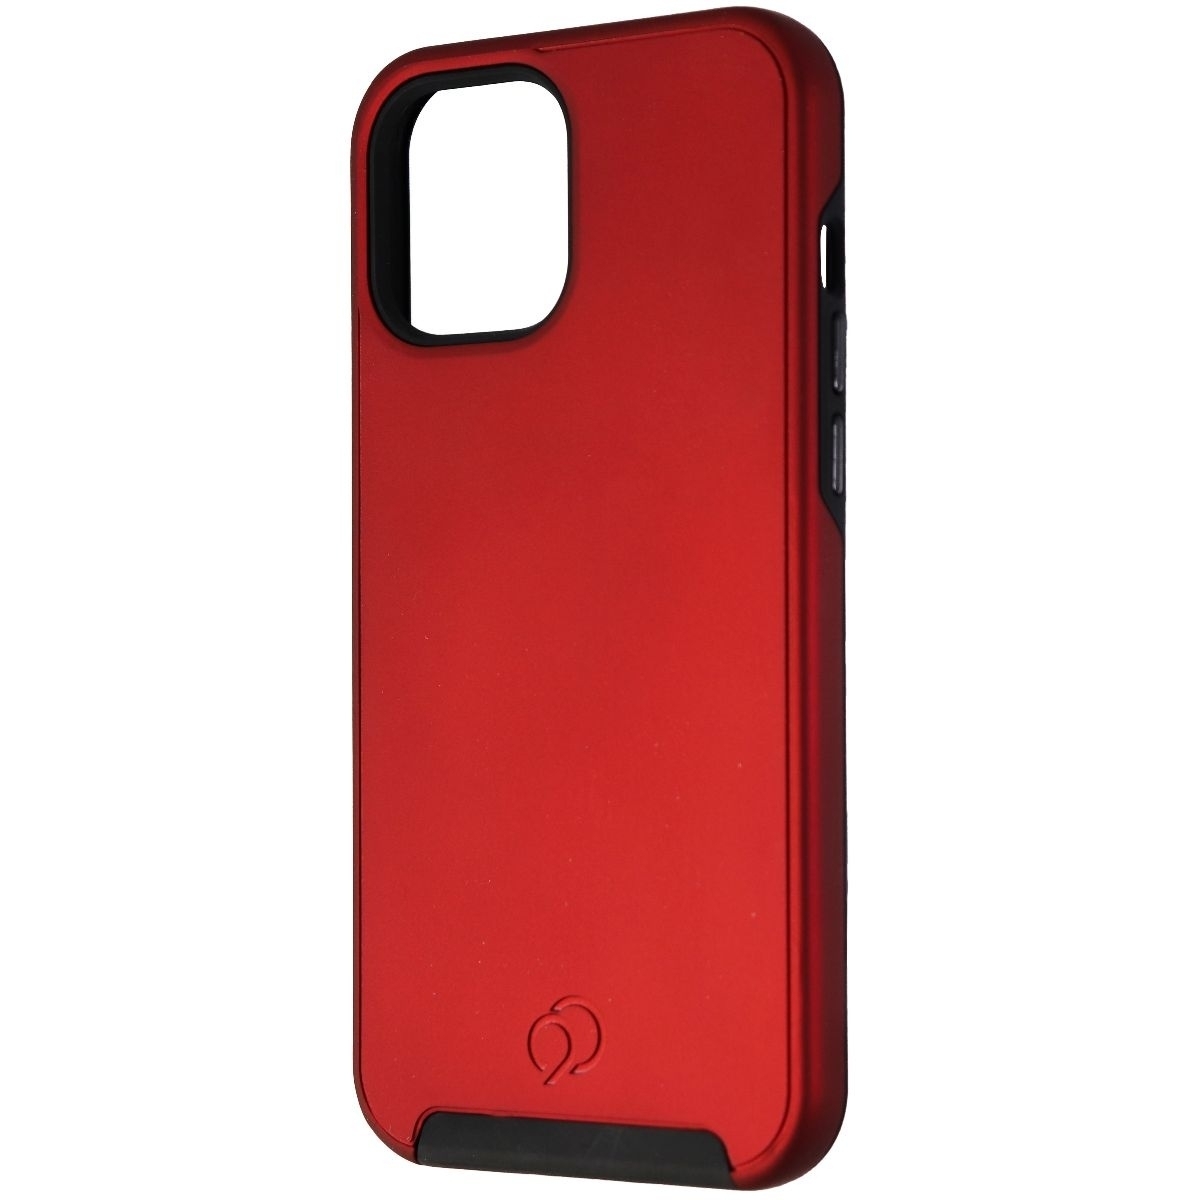 Nimbus9 Cirrus 2 Series Case For Apple IPhone 12 Pro Max - Crimson Red/Black